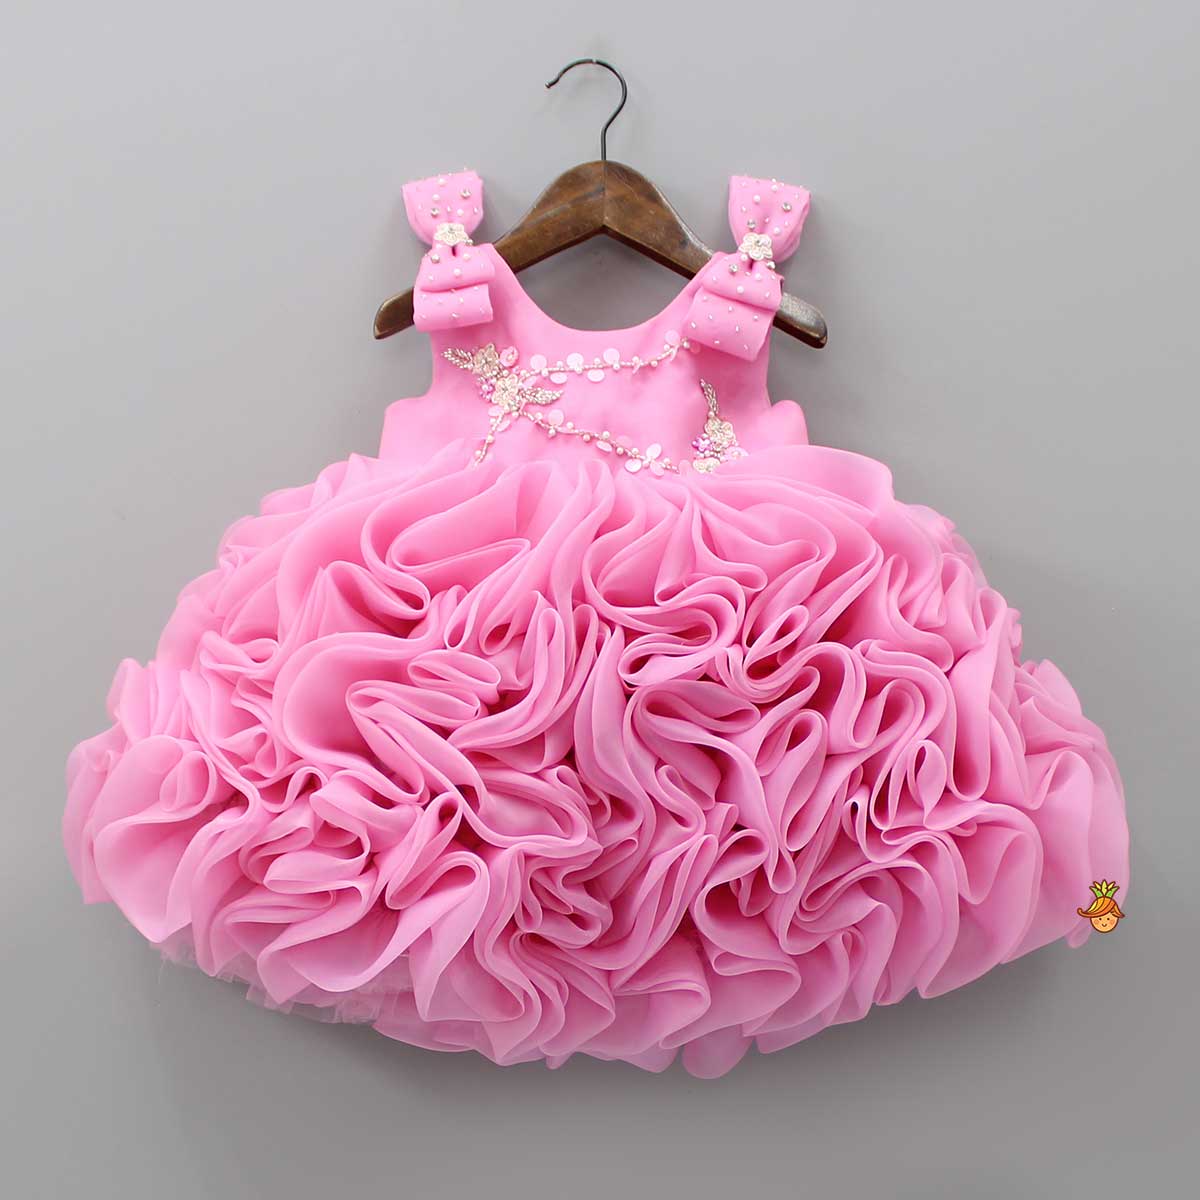 Fabulous Pink Swirled Organza Dress